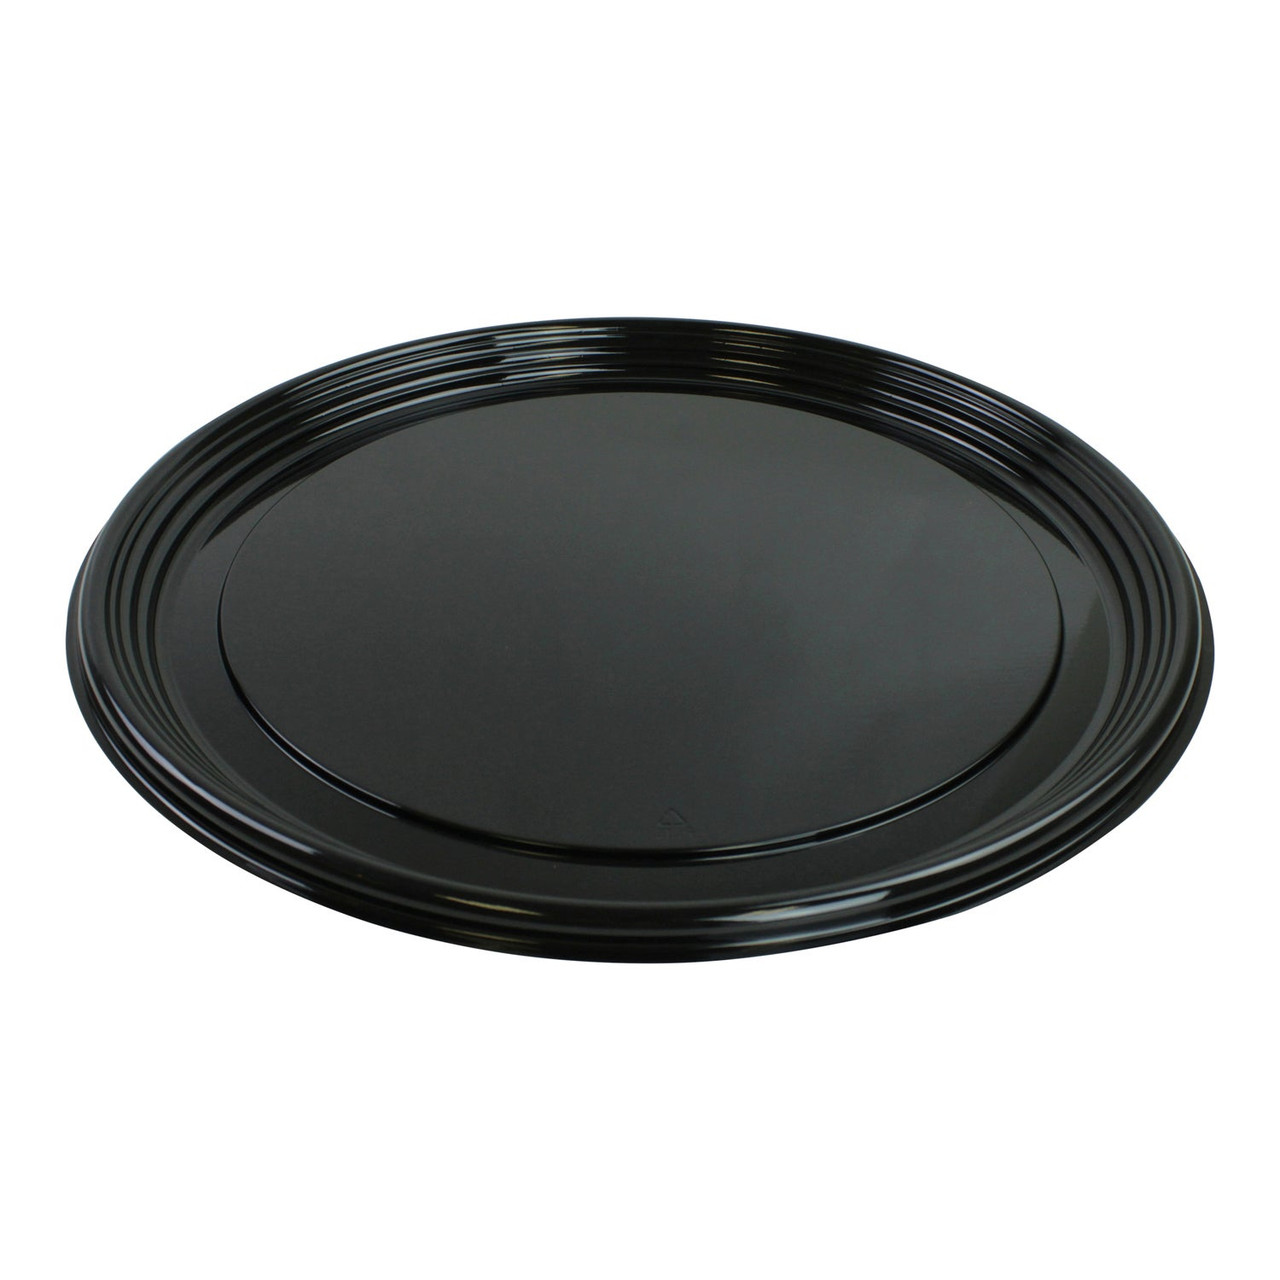 Sabert 16In Black Plastic Round Platters | 36UN/Unit, 1 Unit/Case